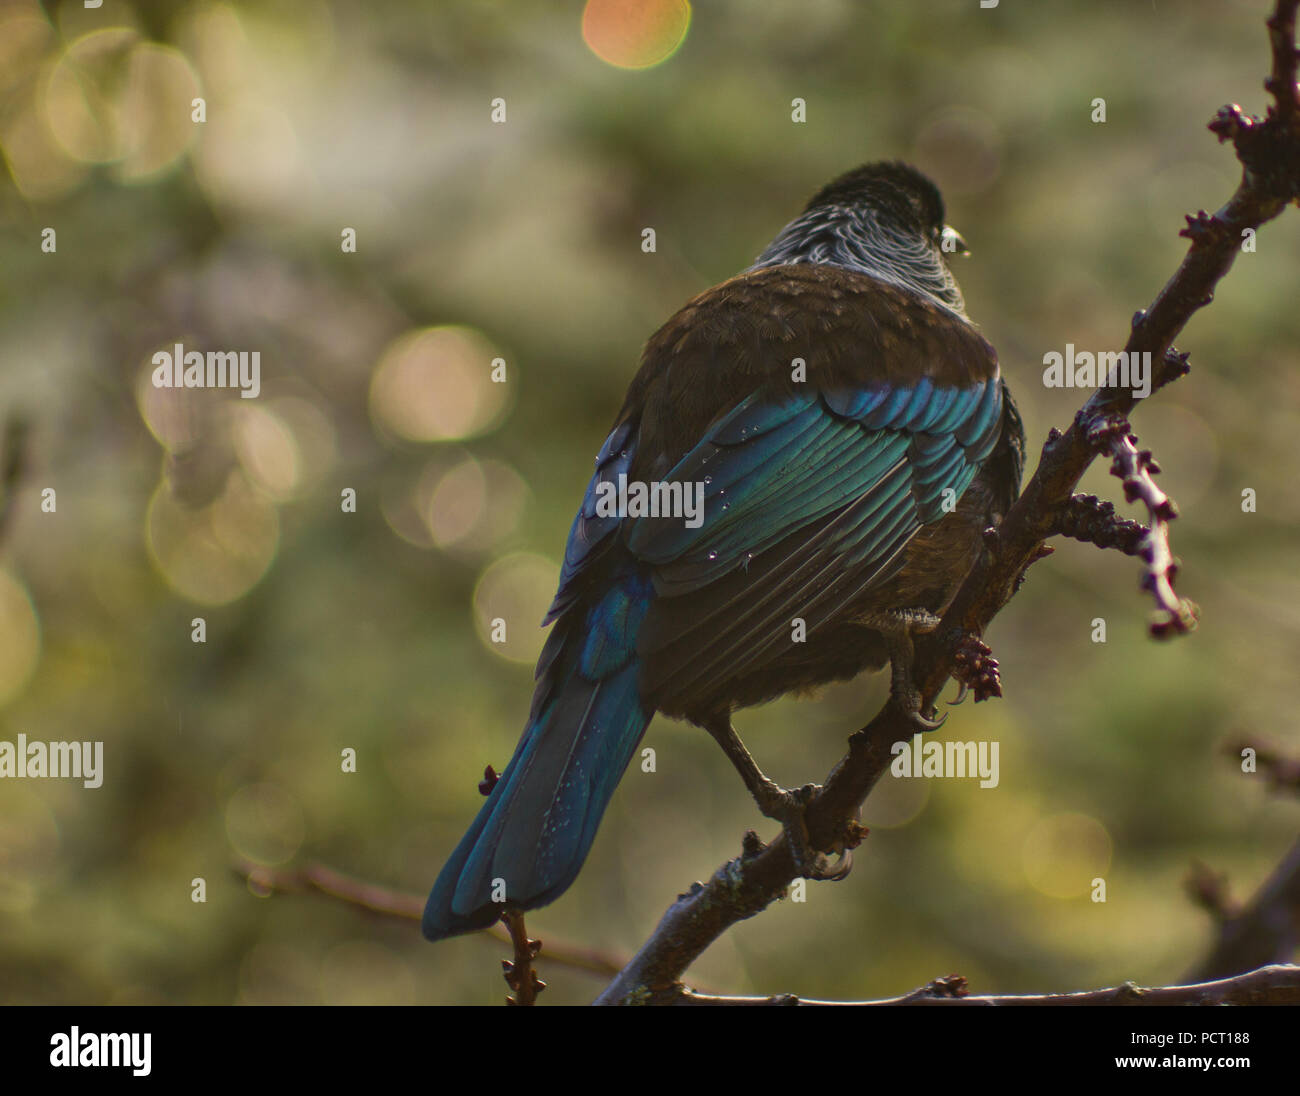 Beau bleu vert originaire de Nouvelle-Zélande Tui bird perché en arbre dans la pluie du soir Banque D'Images